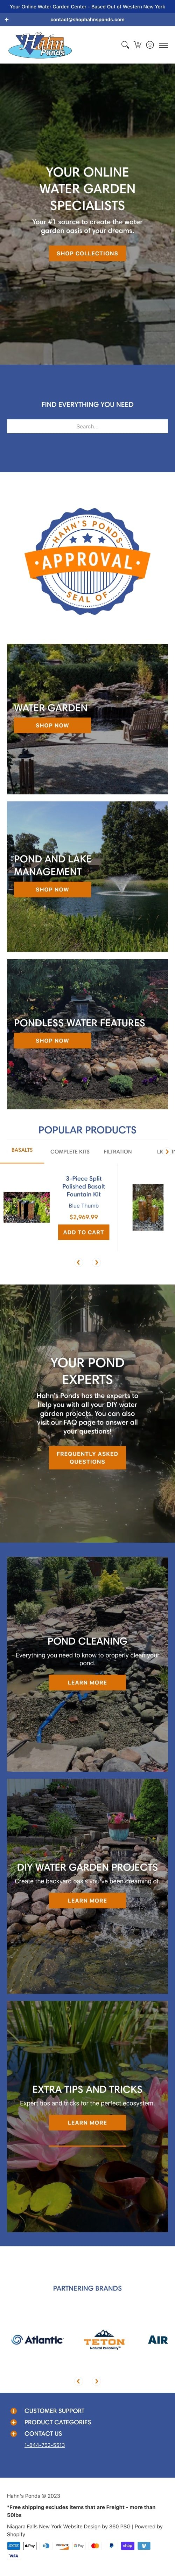 Hahn's Ponds Website - Mobile